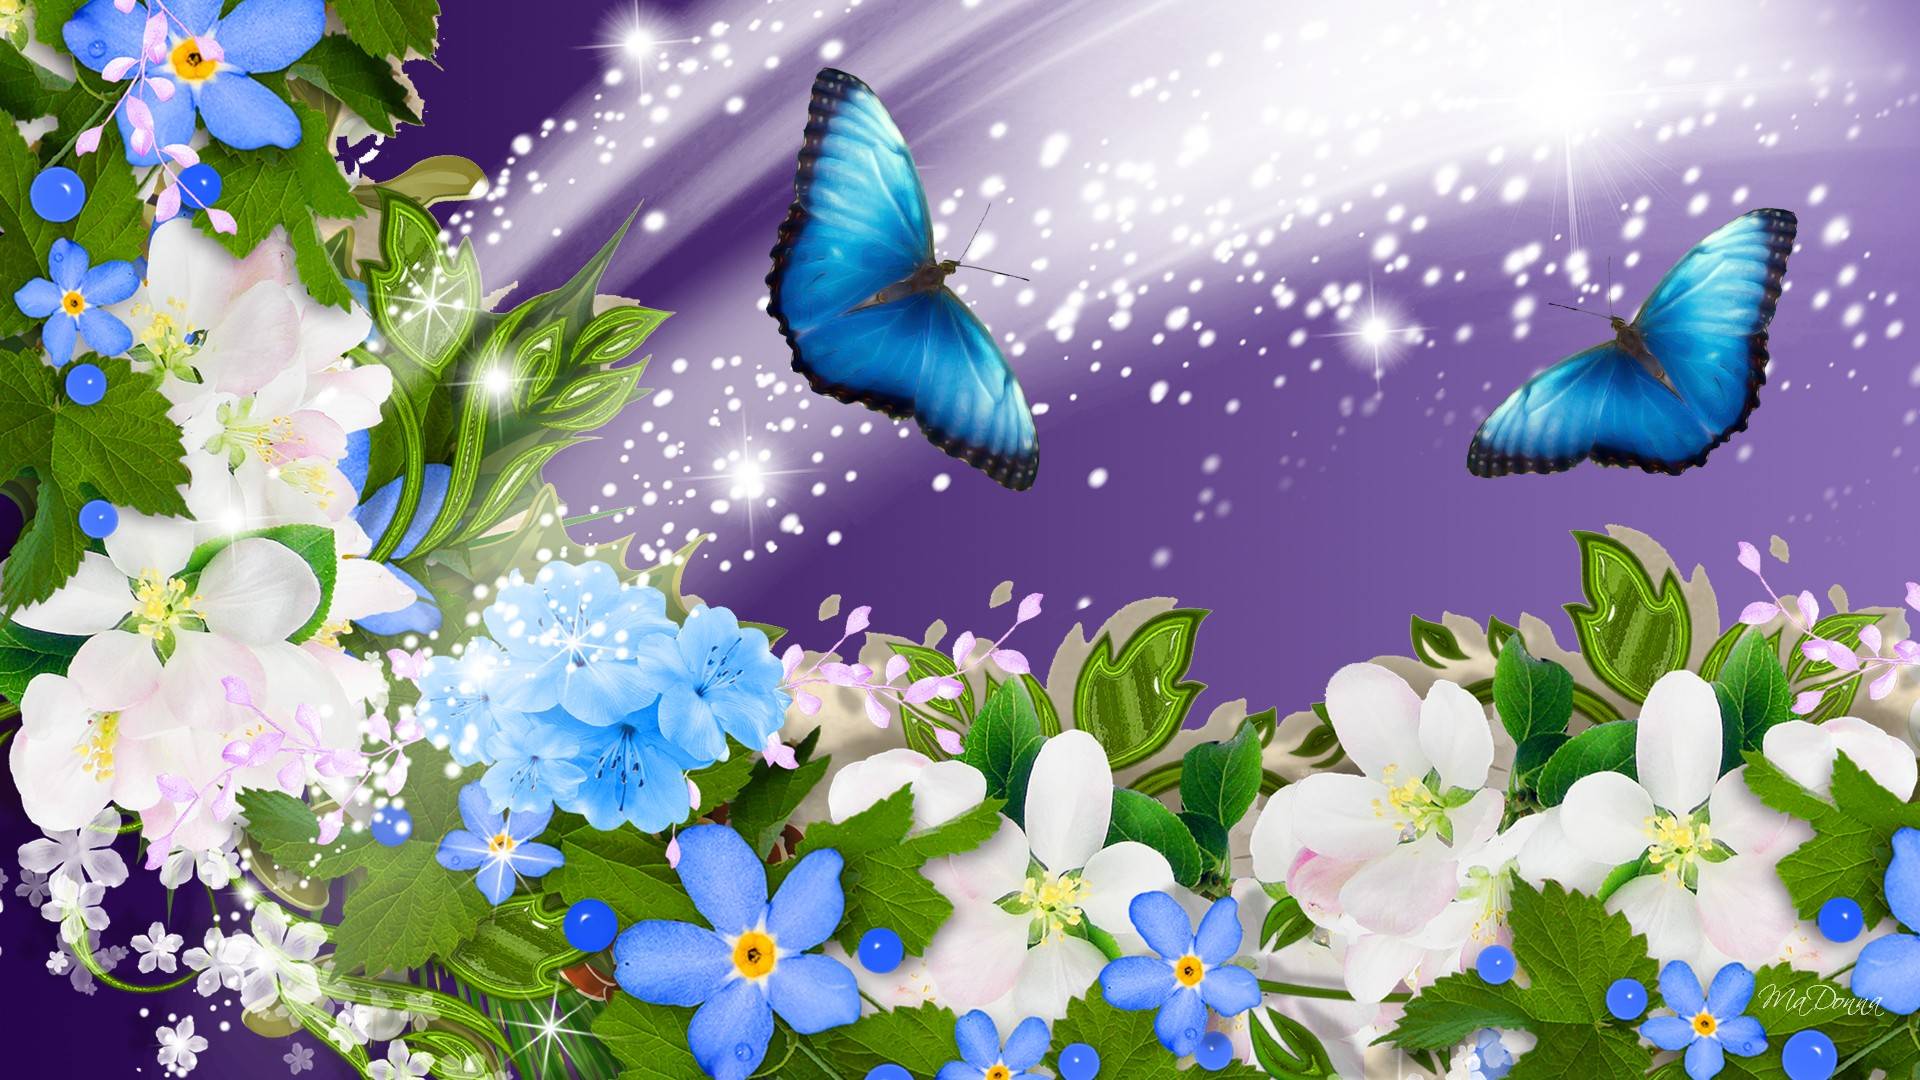 Blue Butterfly In Flowers - HD Wallpaper 